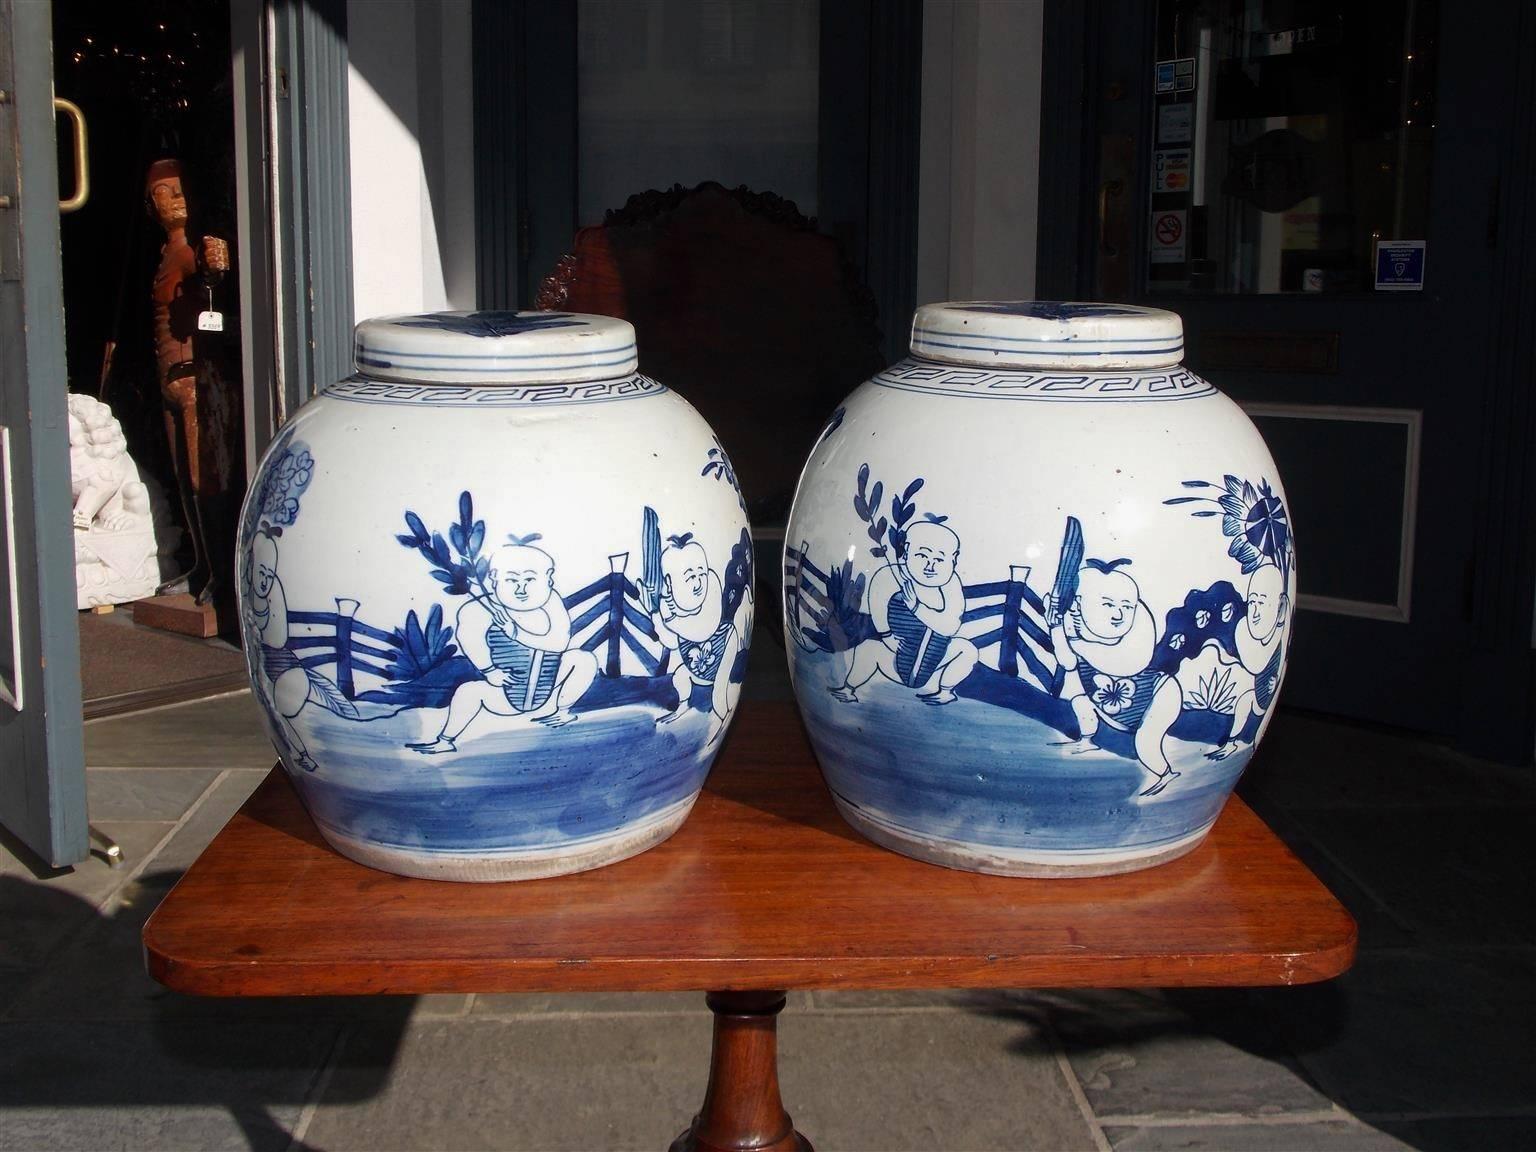 Paire de pots à gingembre en porcelaine chinoise bleue et blanche émaillée décorative figurative et florale avec les couvercles amovibles d'origine, 20e siècle.